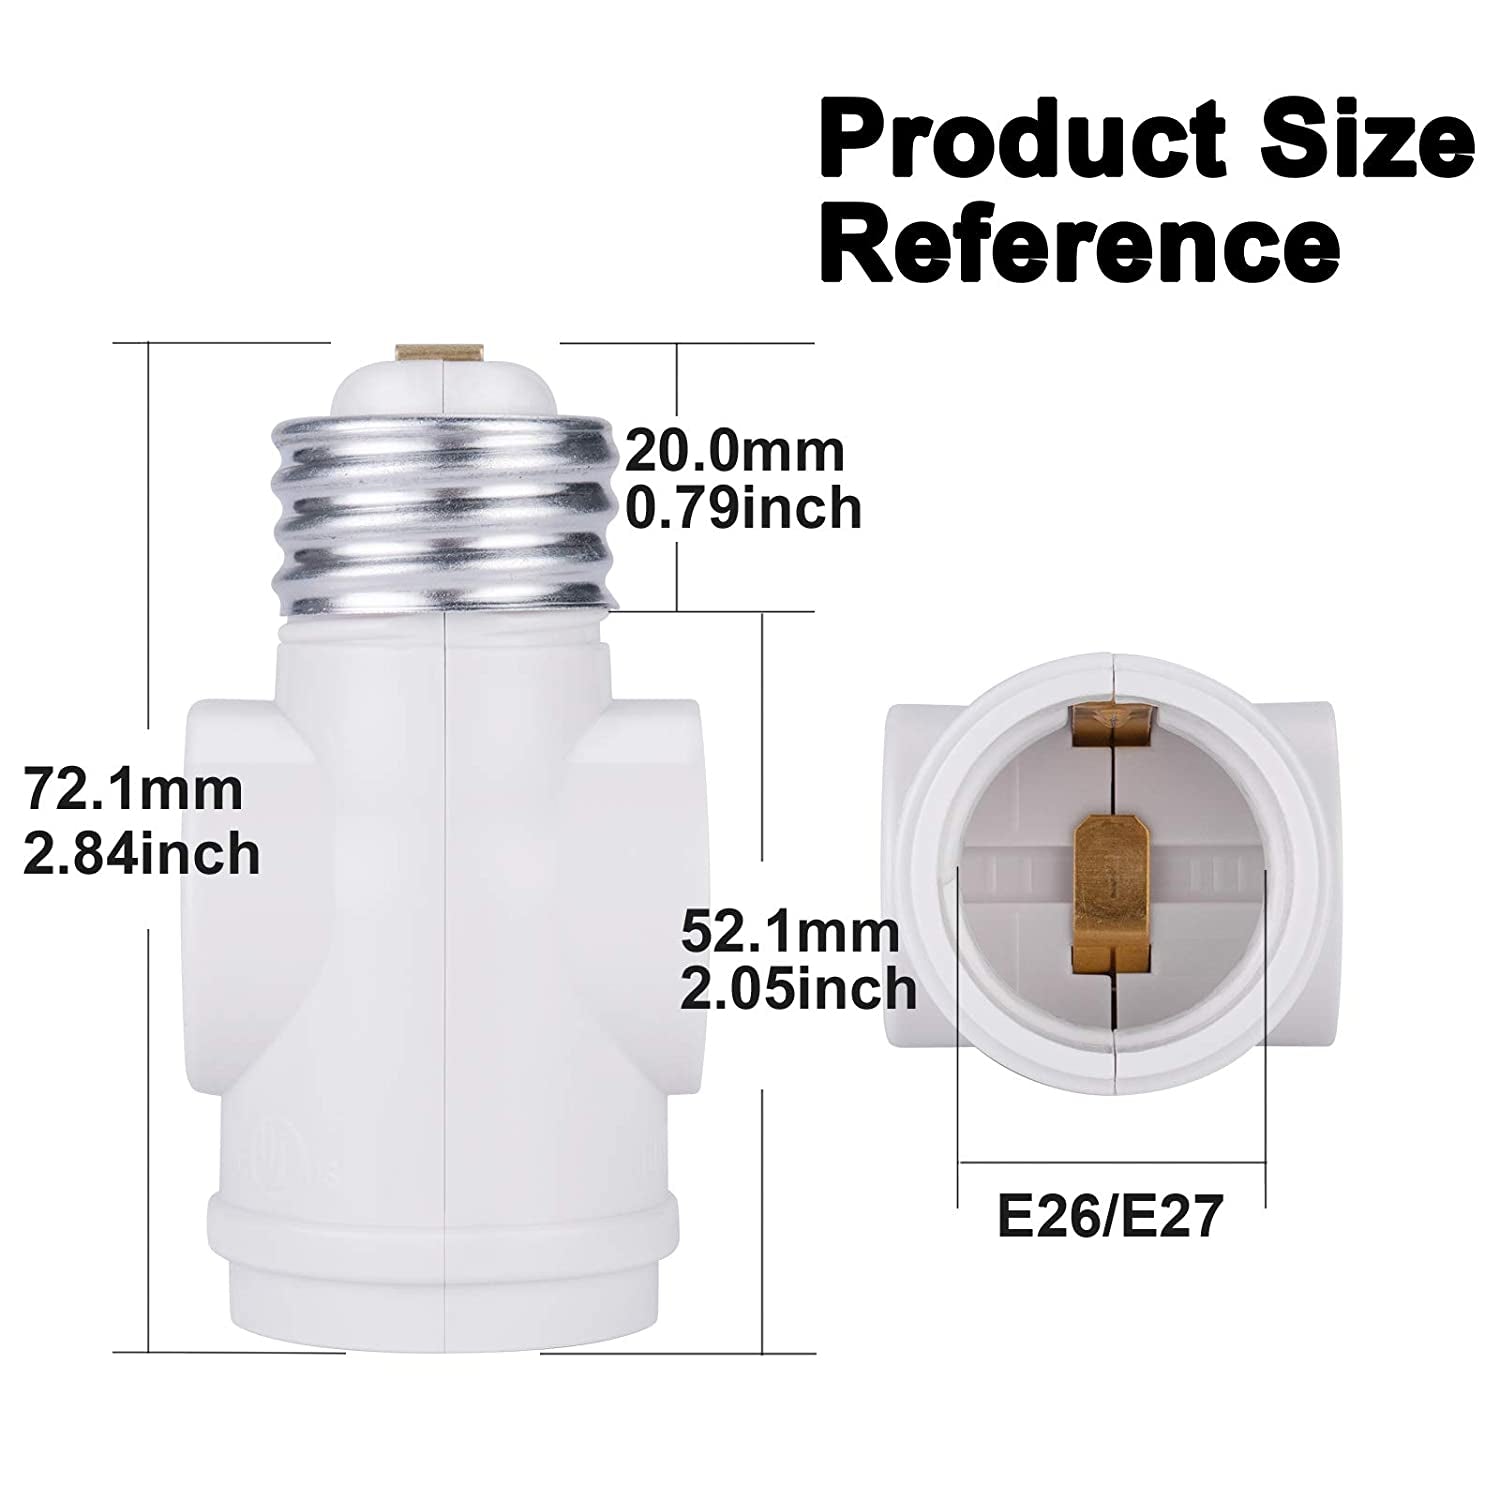 UL Listed E26 to 2 Polarized Outlet Socket Adapter, Standard (Medium) E26 Base Light Bulb to 2-Prong Outlet Plug Splitter Converter, White, 2-Pack